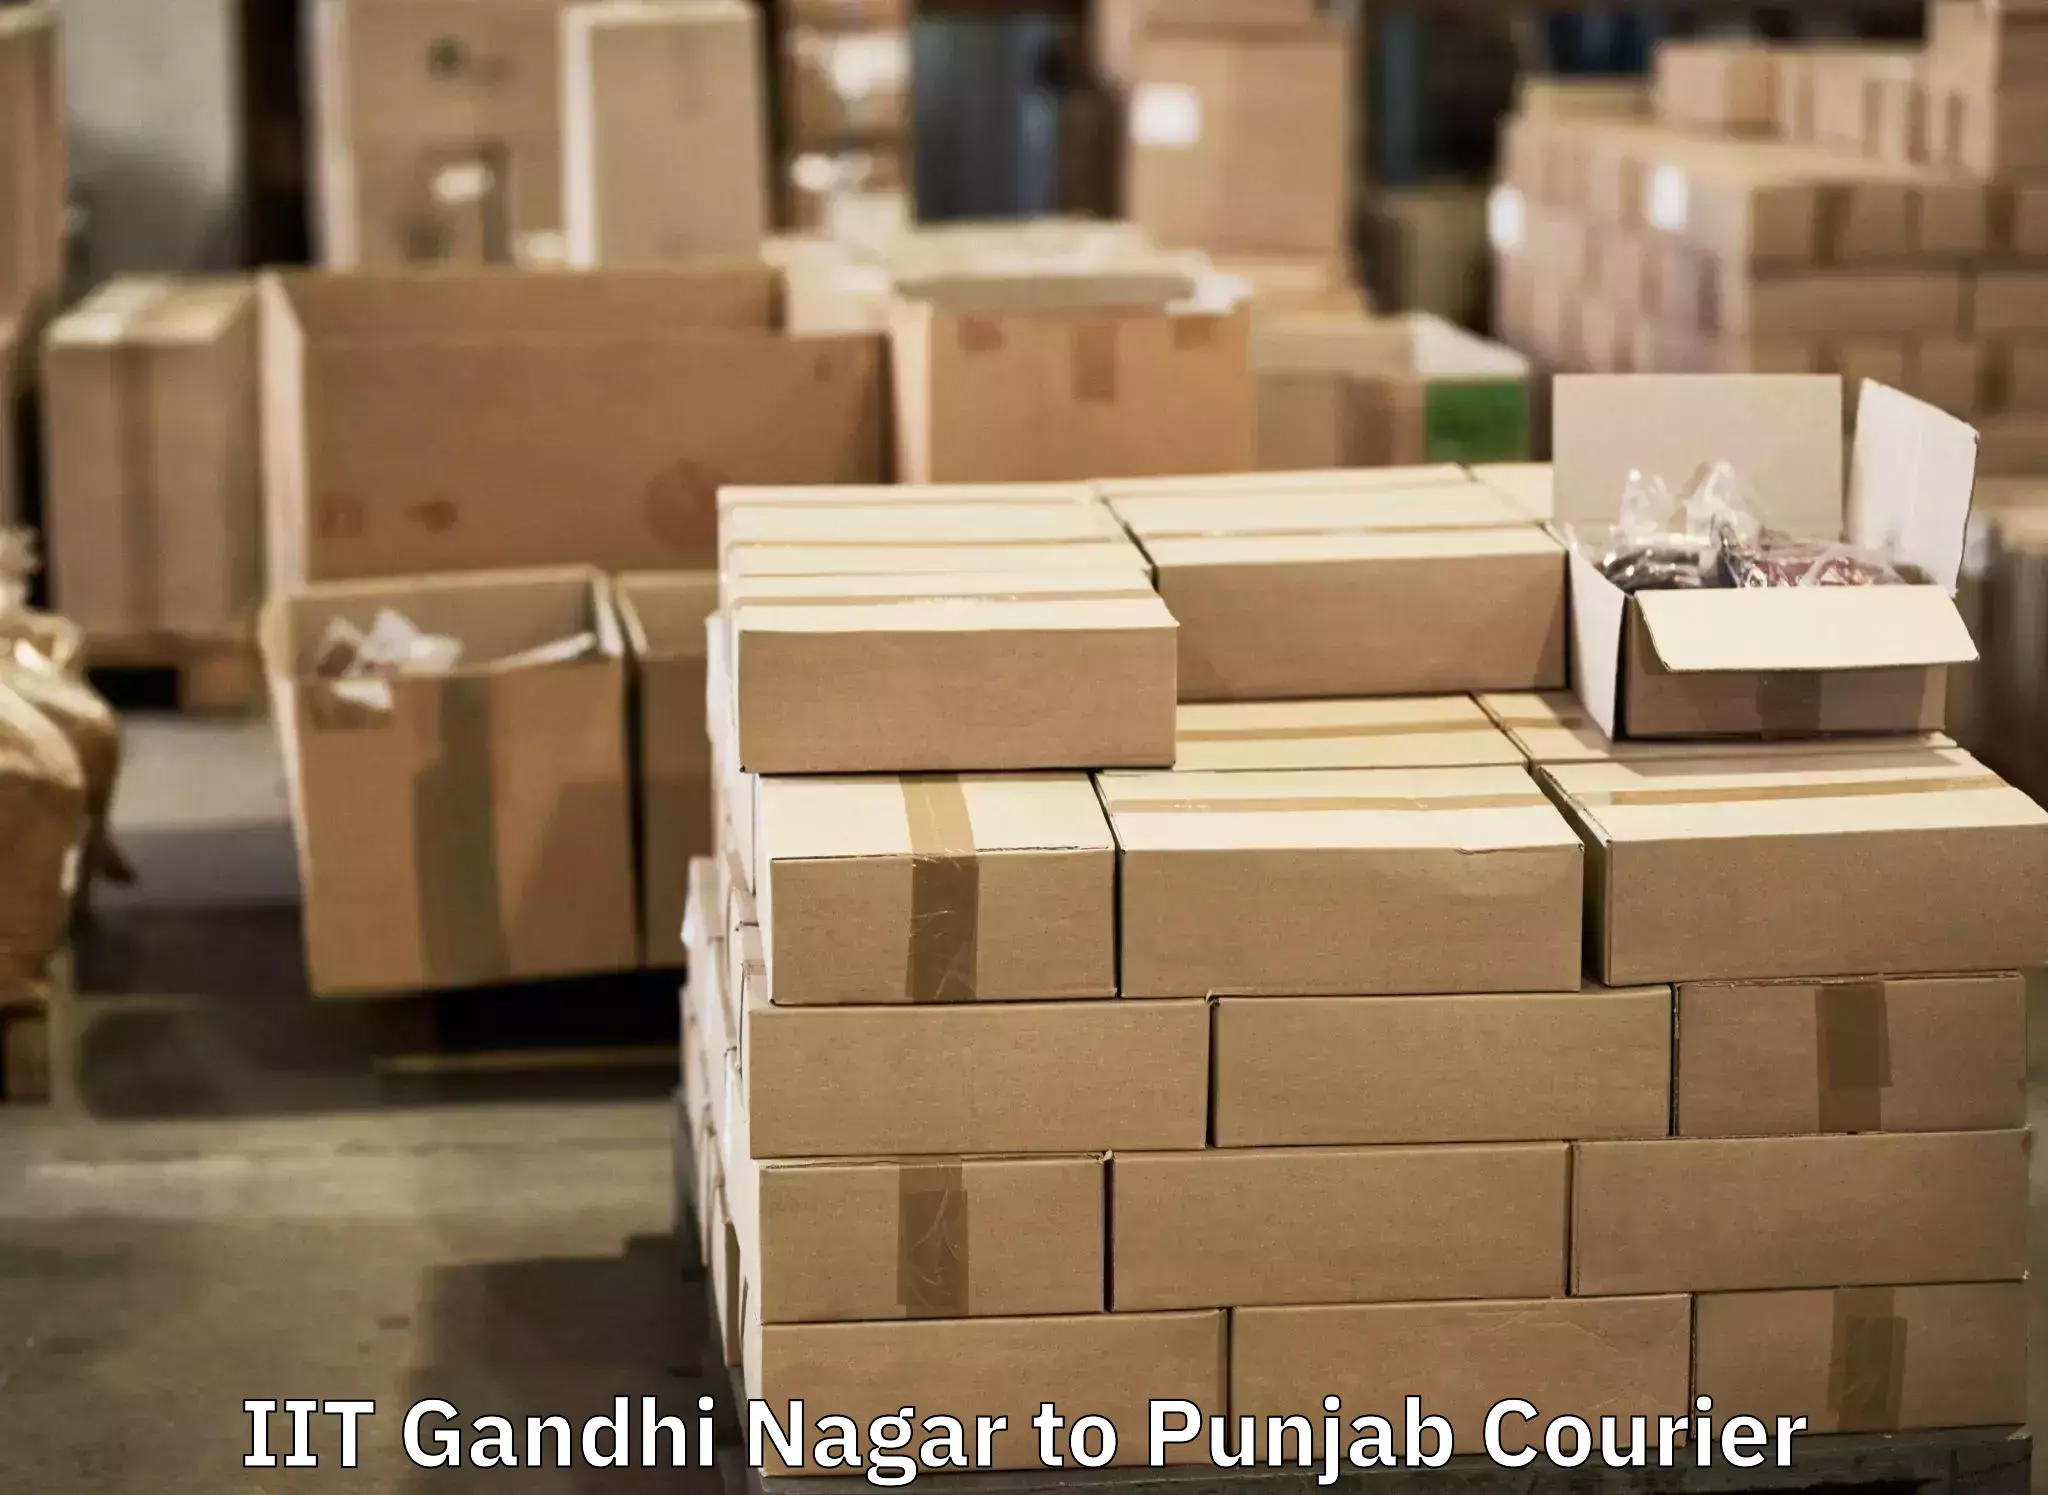 Baggage courier solutions IIT Gandhi Nagar to Zirakpur